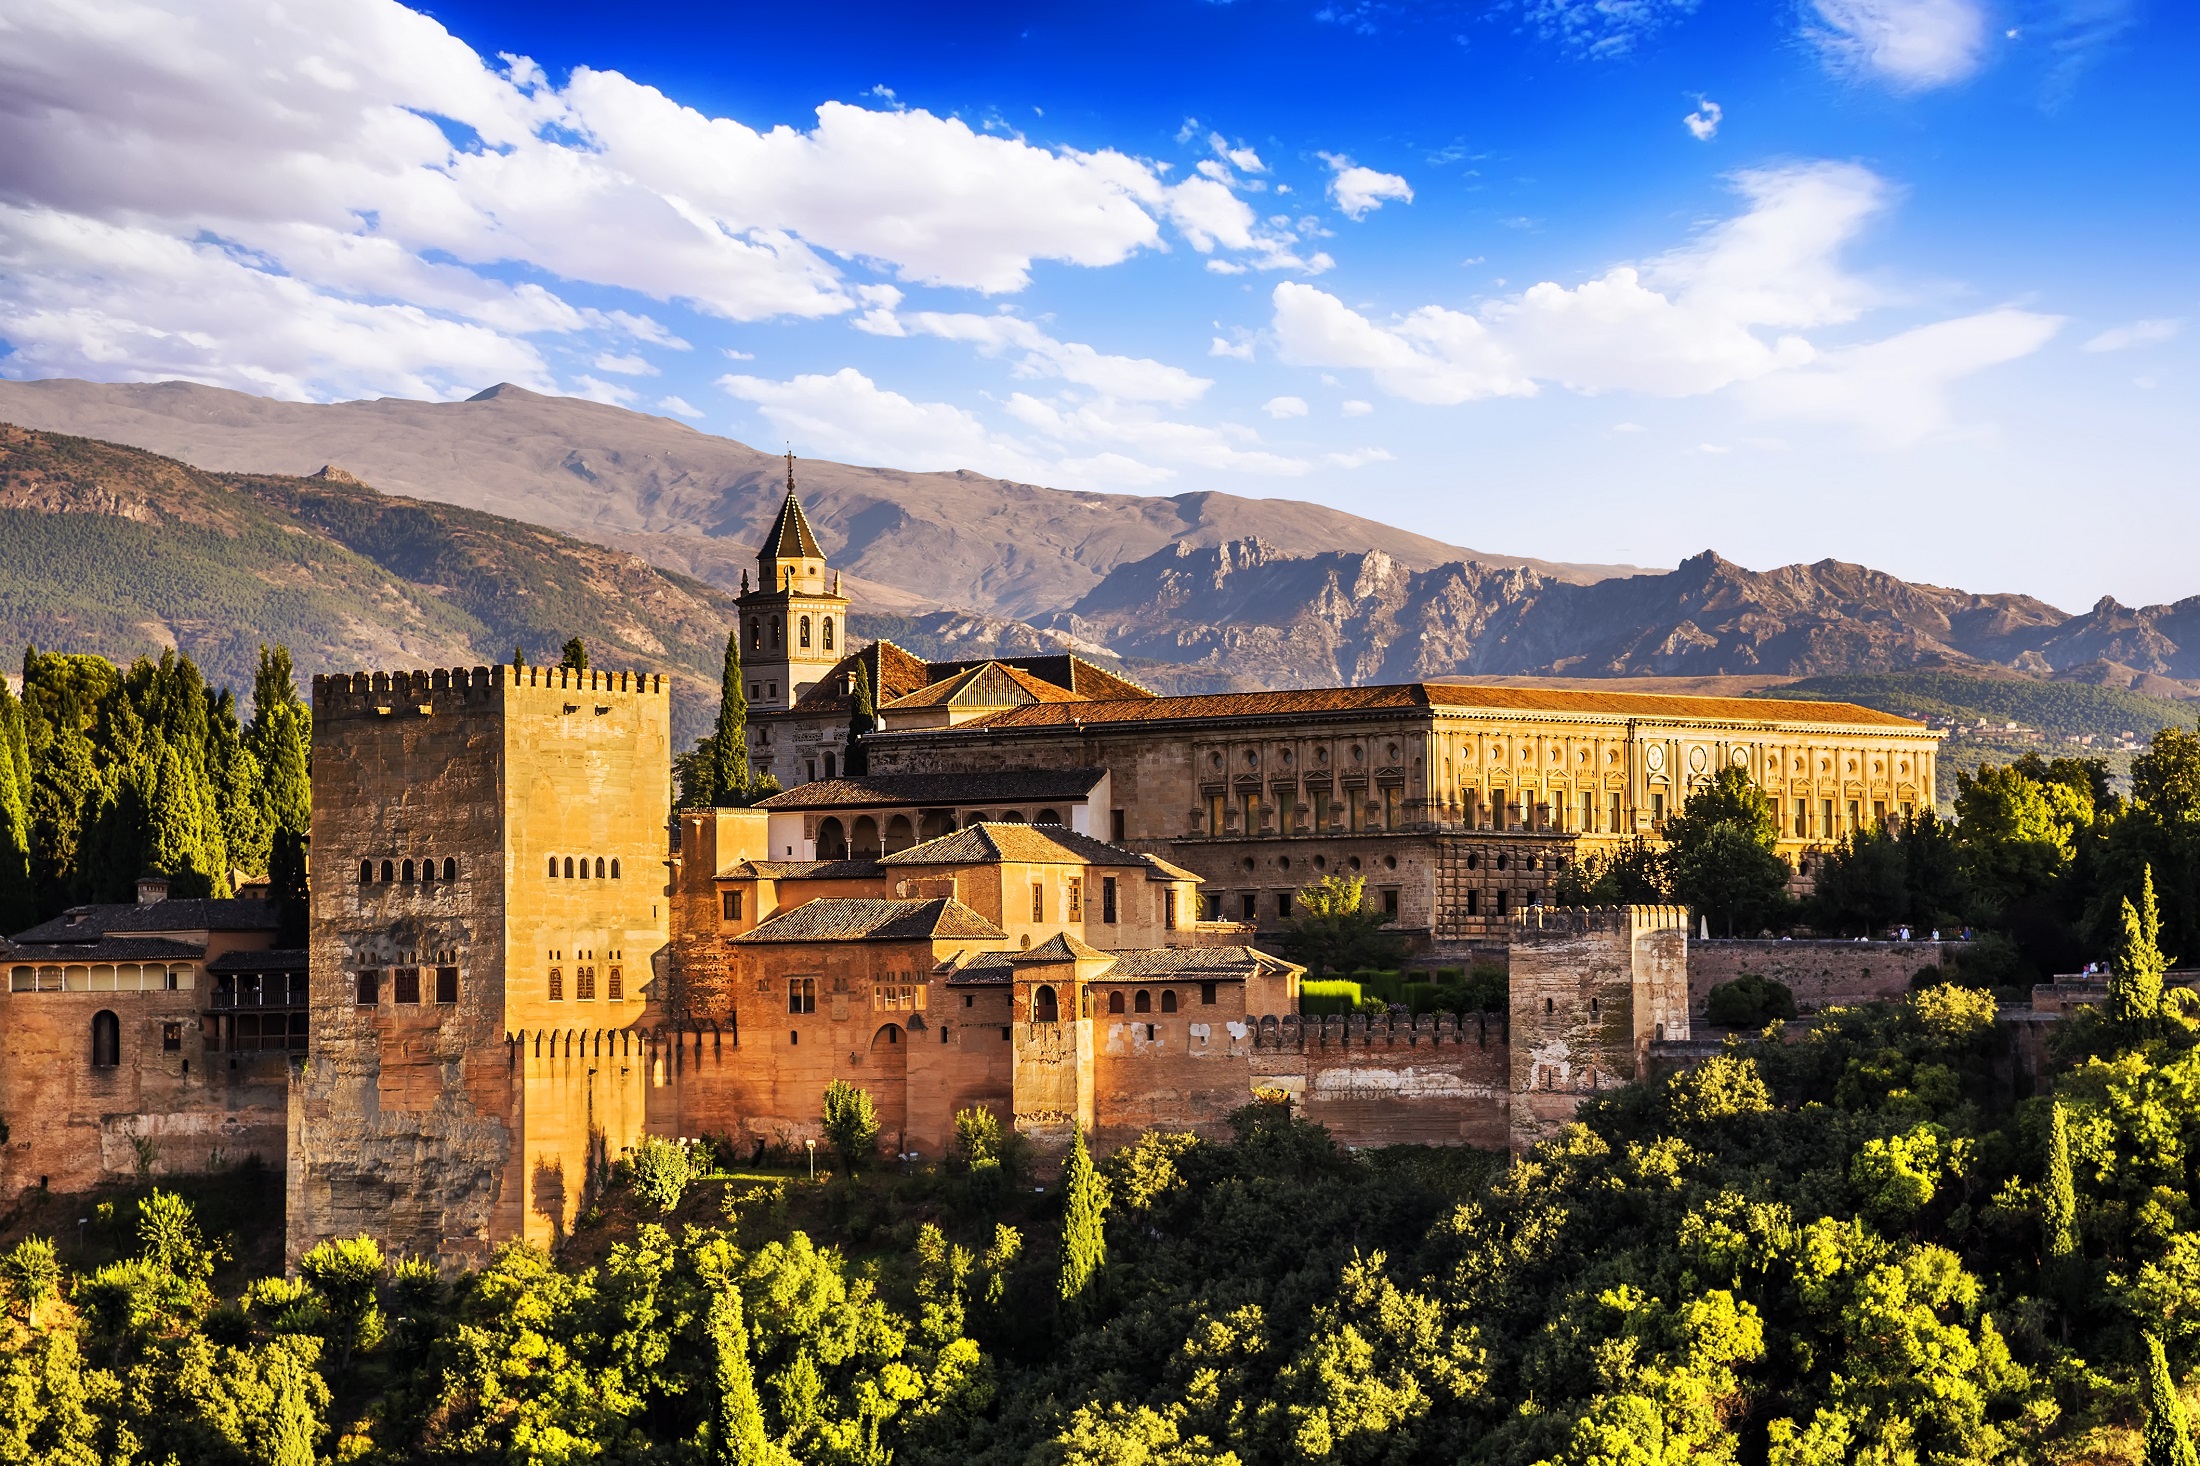 Excursion to the Alhambra – Seville excursion – Ceetiz